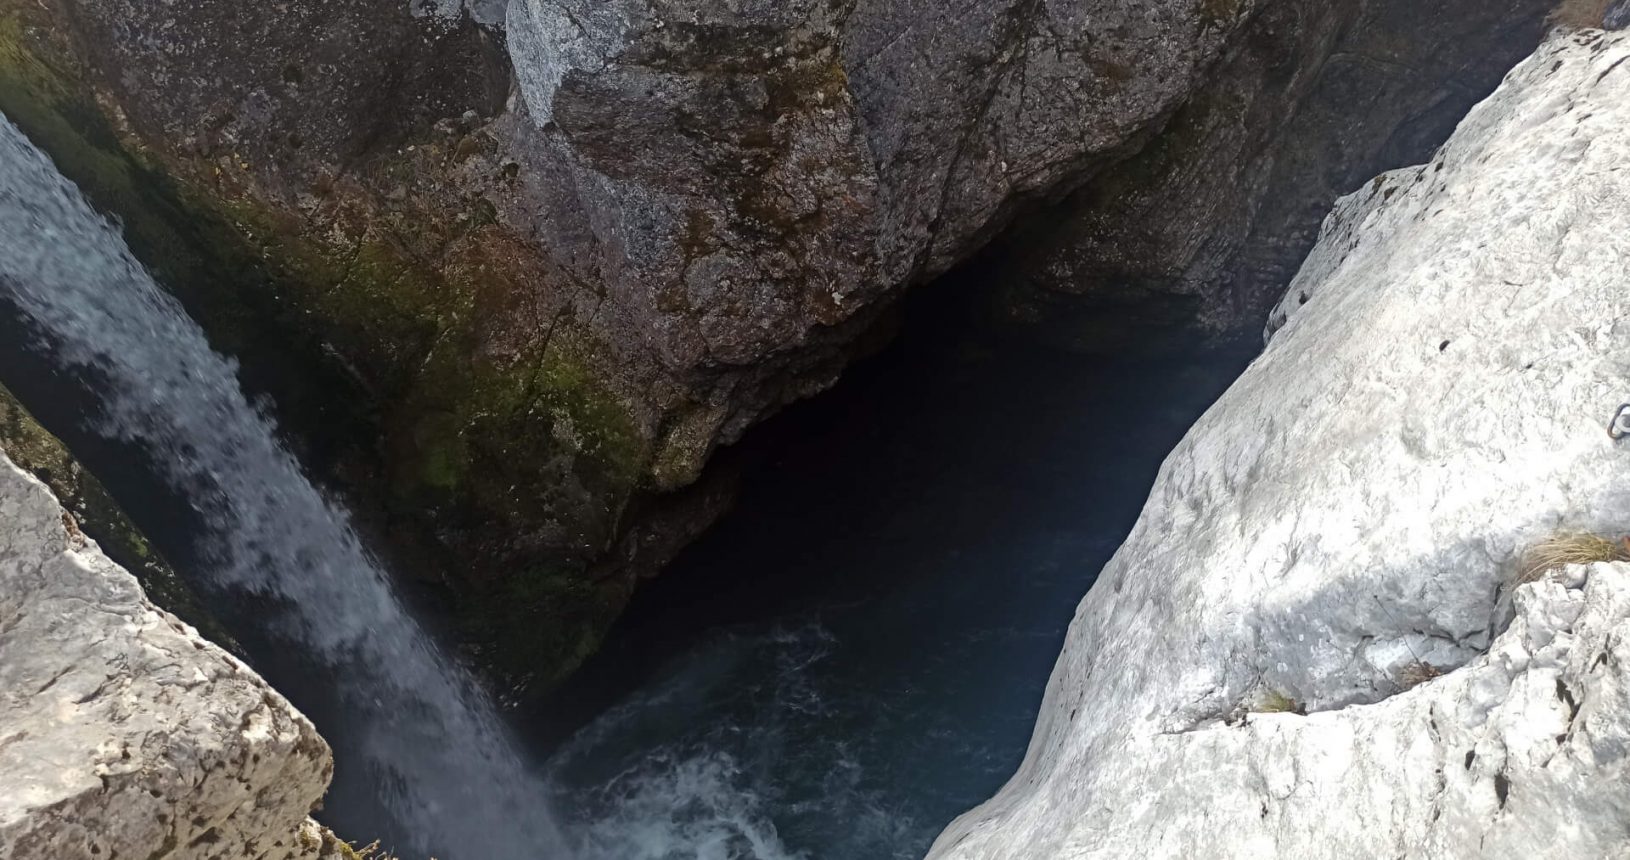 Ujvara waterfall flow